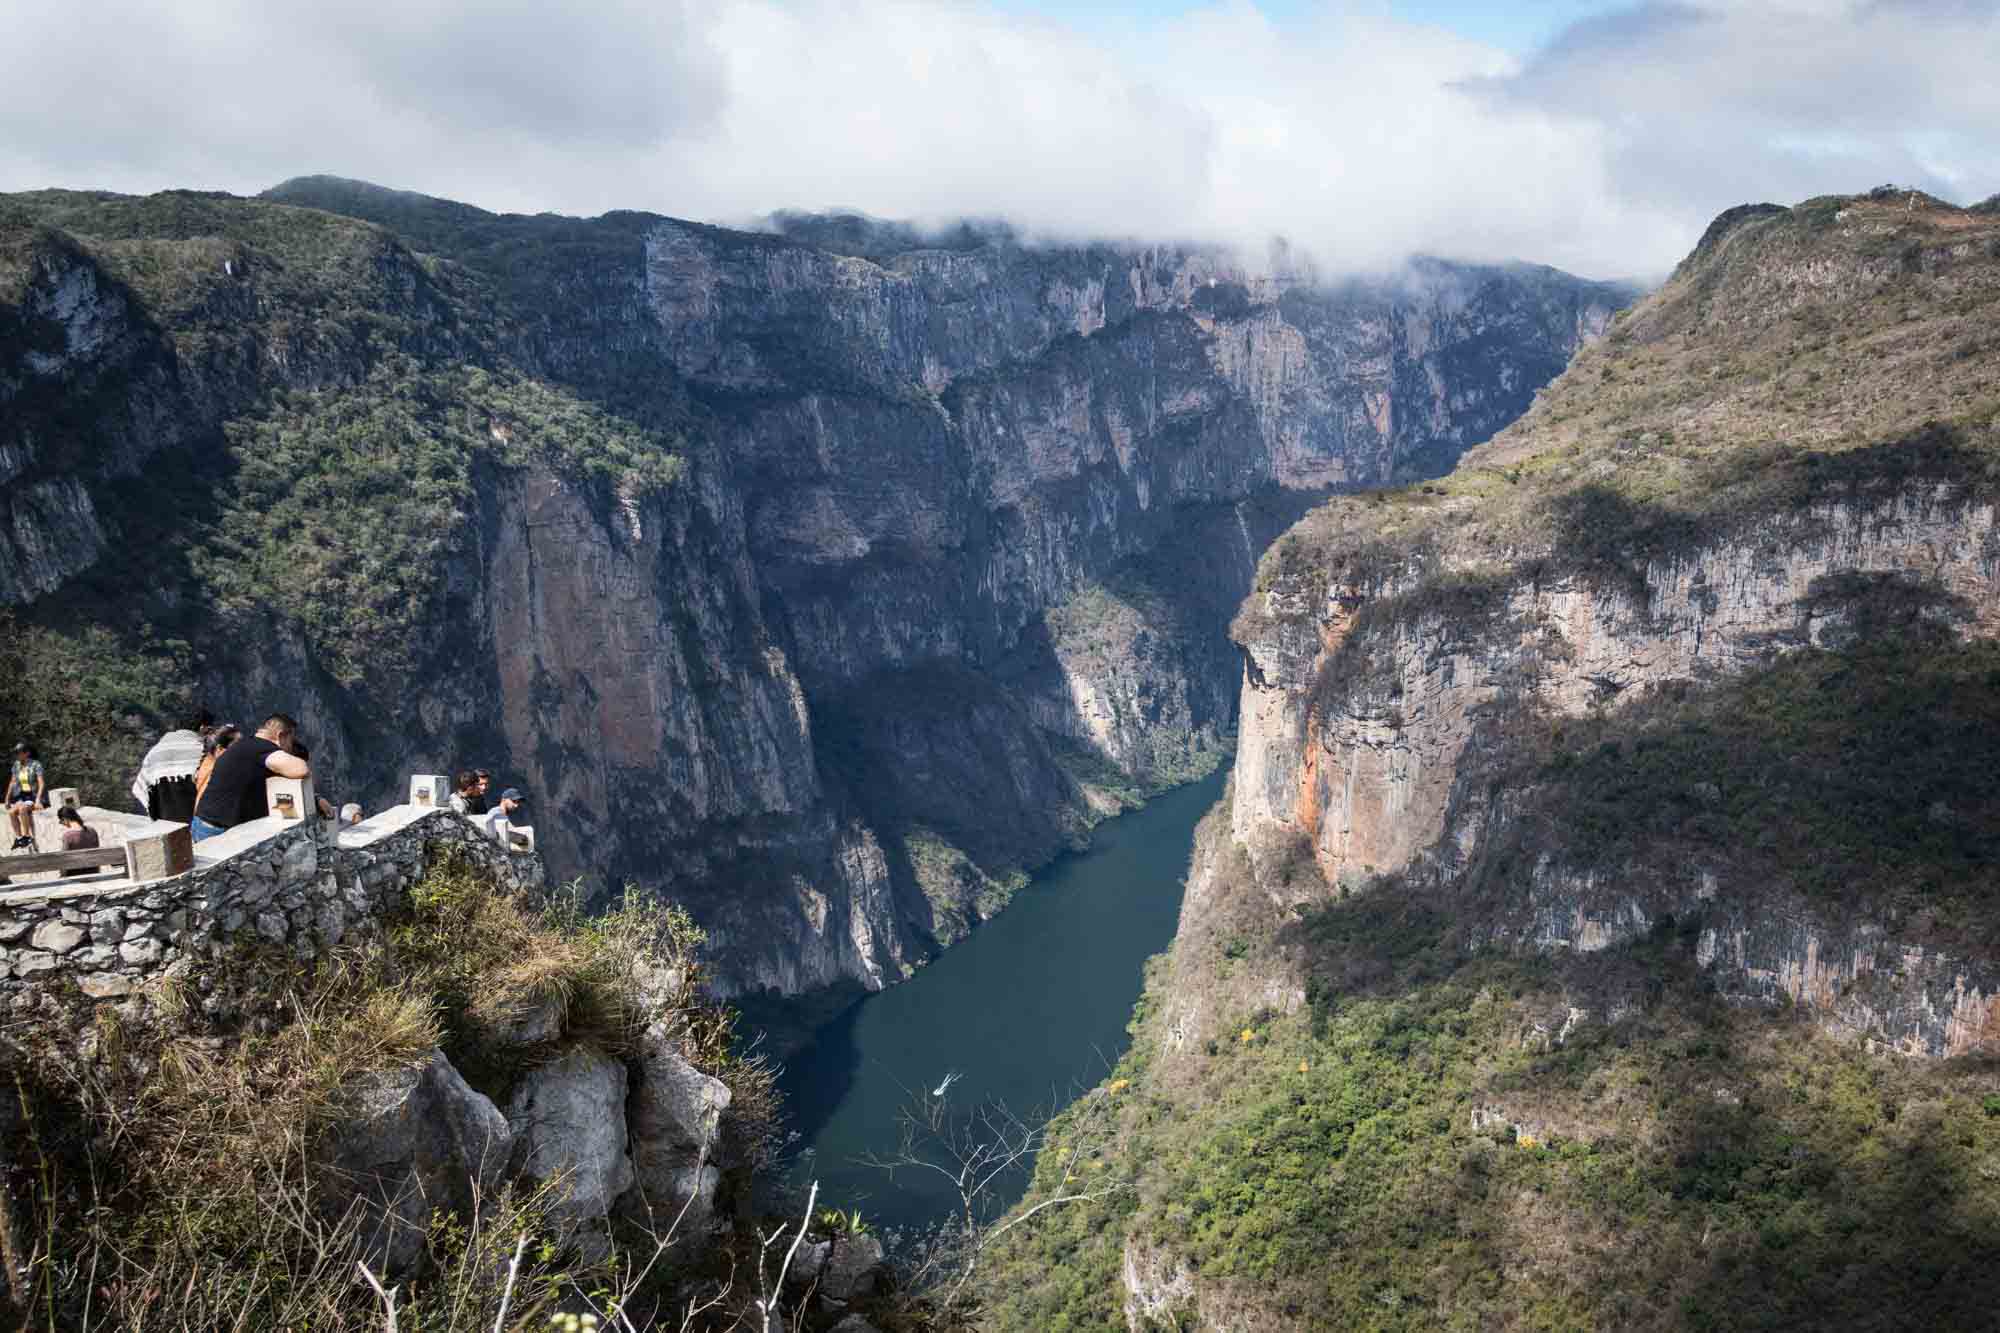 The Sumidero Canyon as seen from a mirador in Chiapas